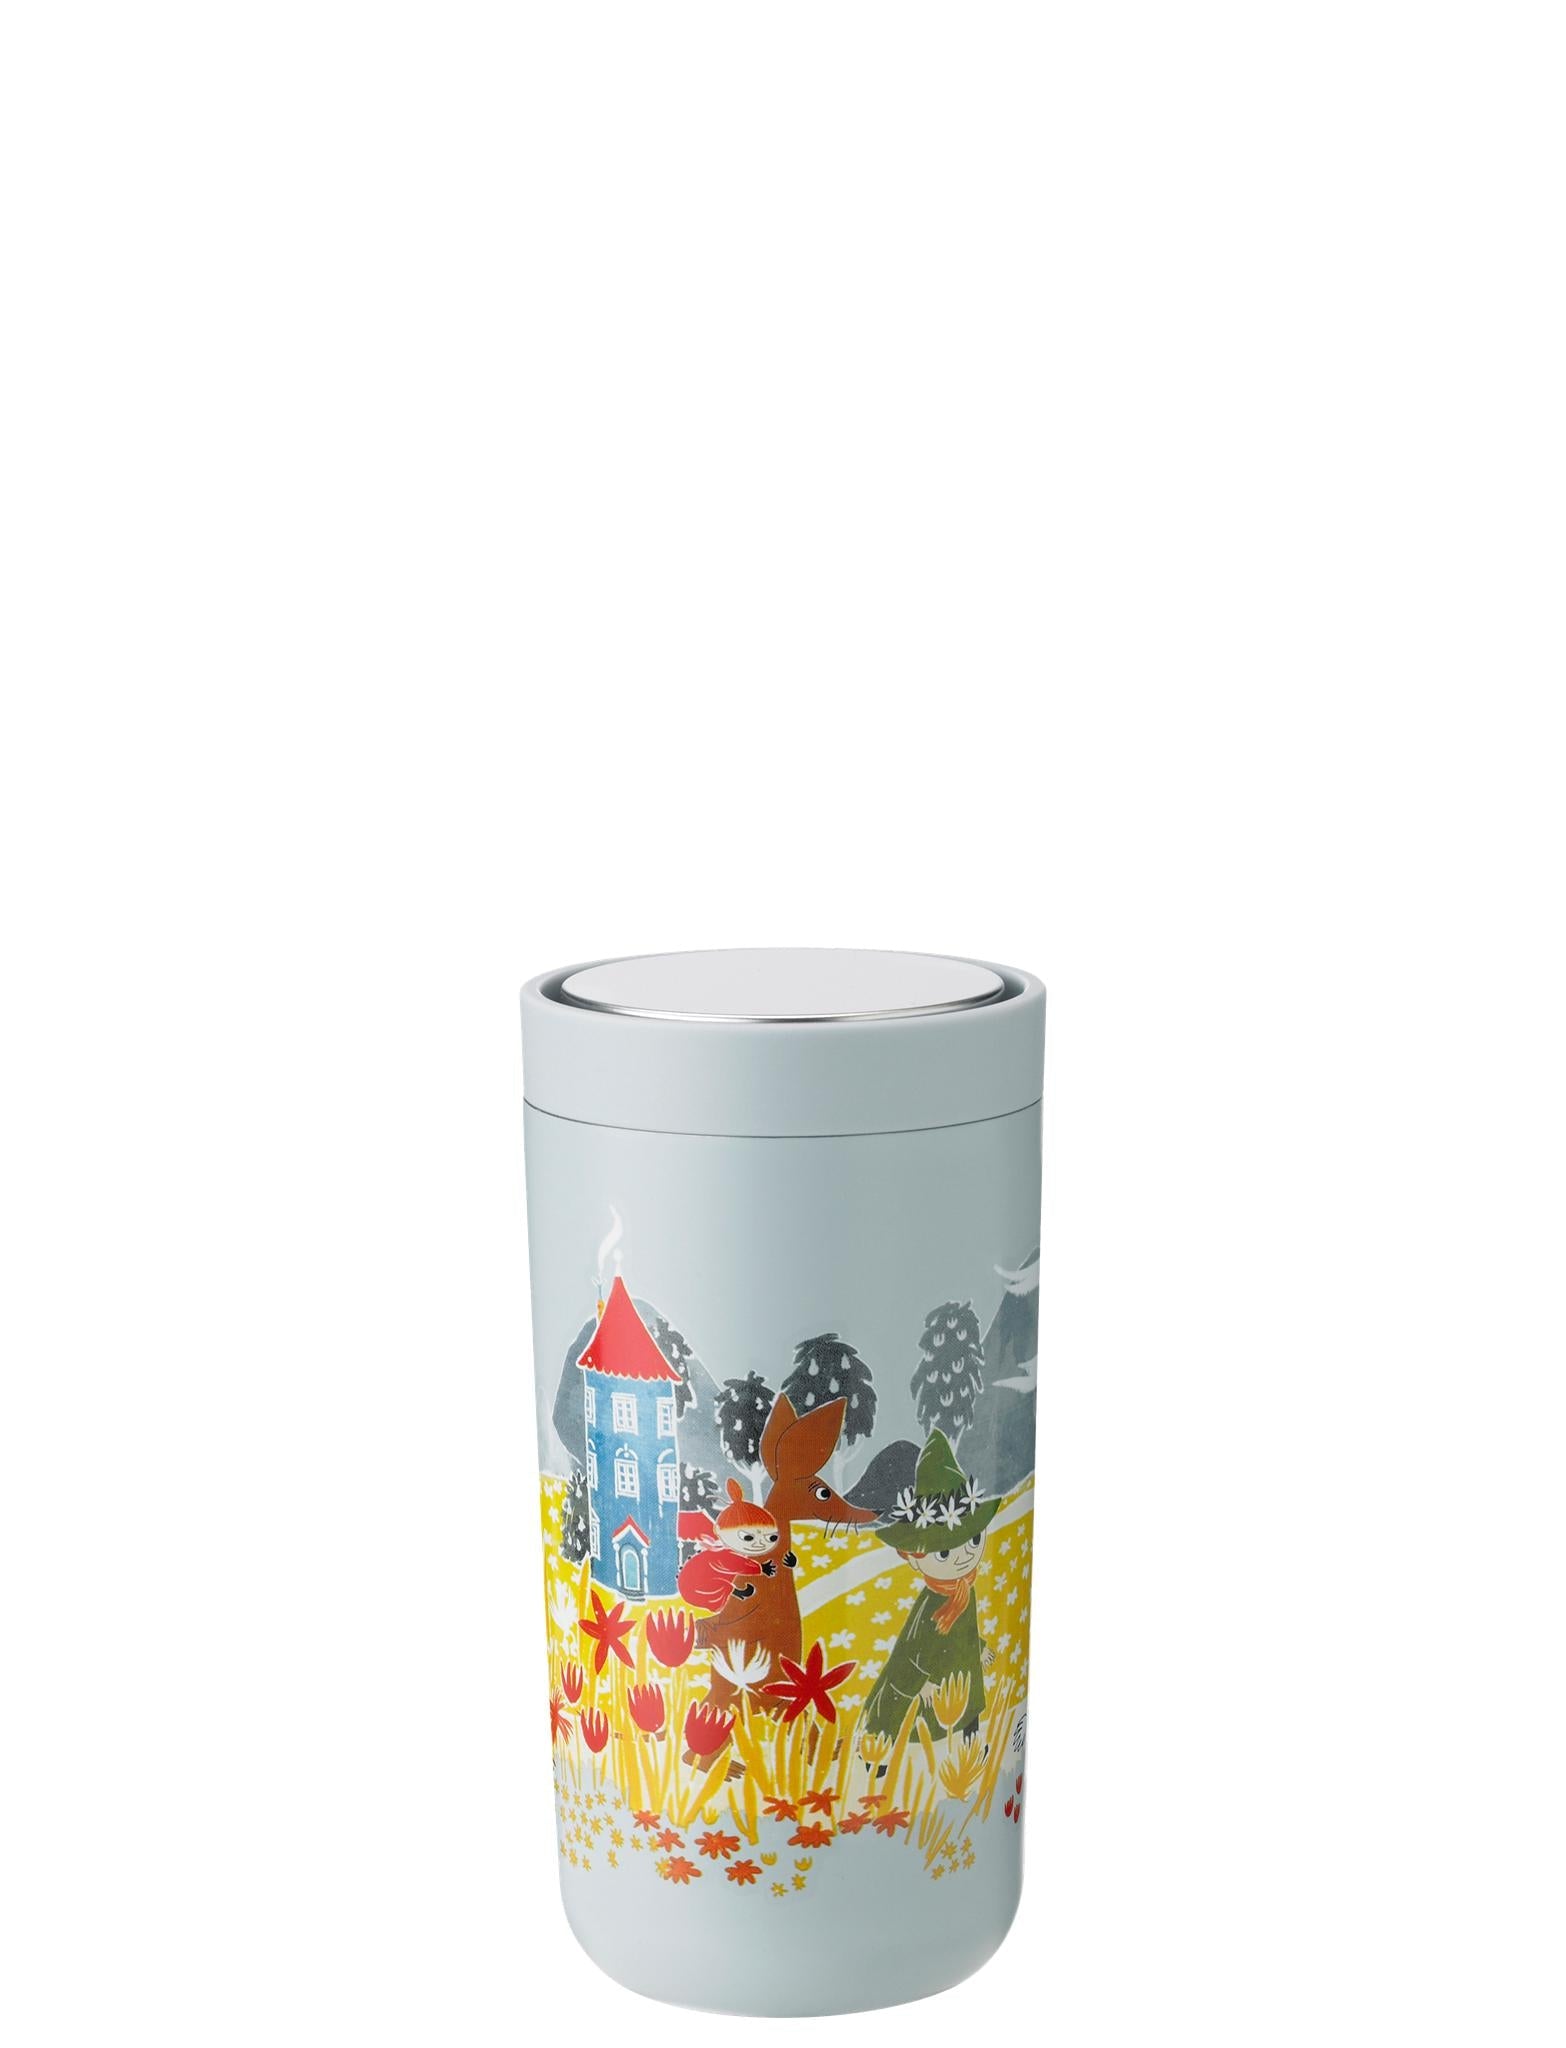 Stelton For at gå på klik Thermo Mug 0.2 L, Moomin Soft Sky